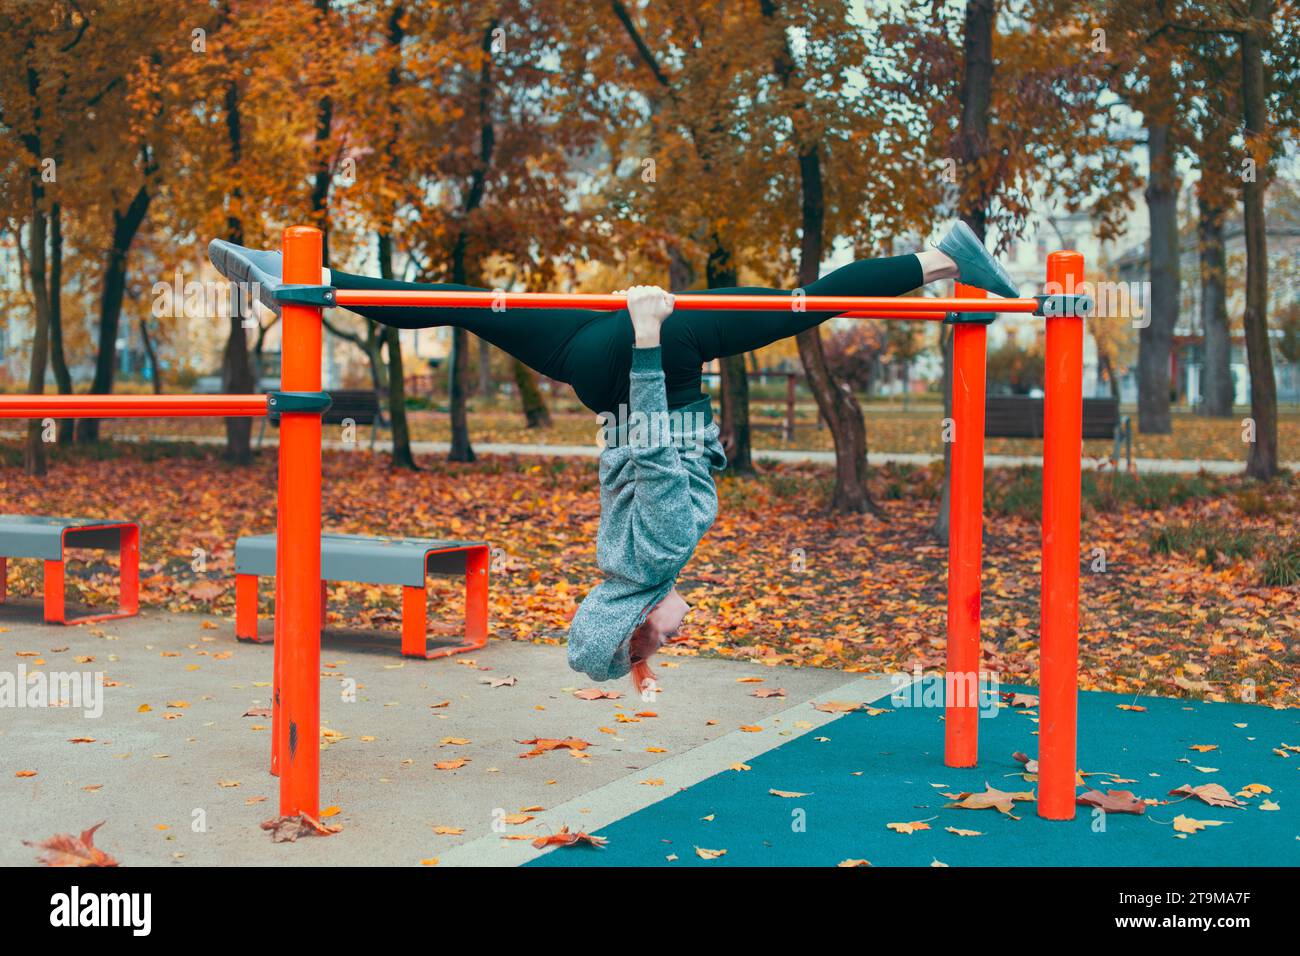 Junge Turnerin in der Stadt Kaukasierin auf dem Spielplatz, die kopfüber an Bars hängt und im Herbst im Park Spaltungen macht Stockfoto